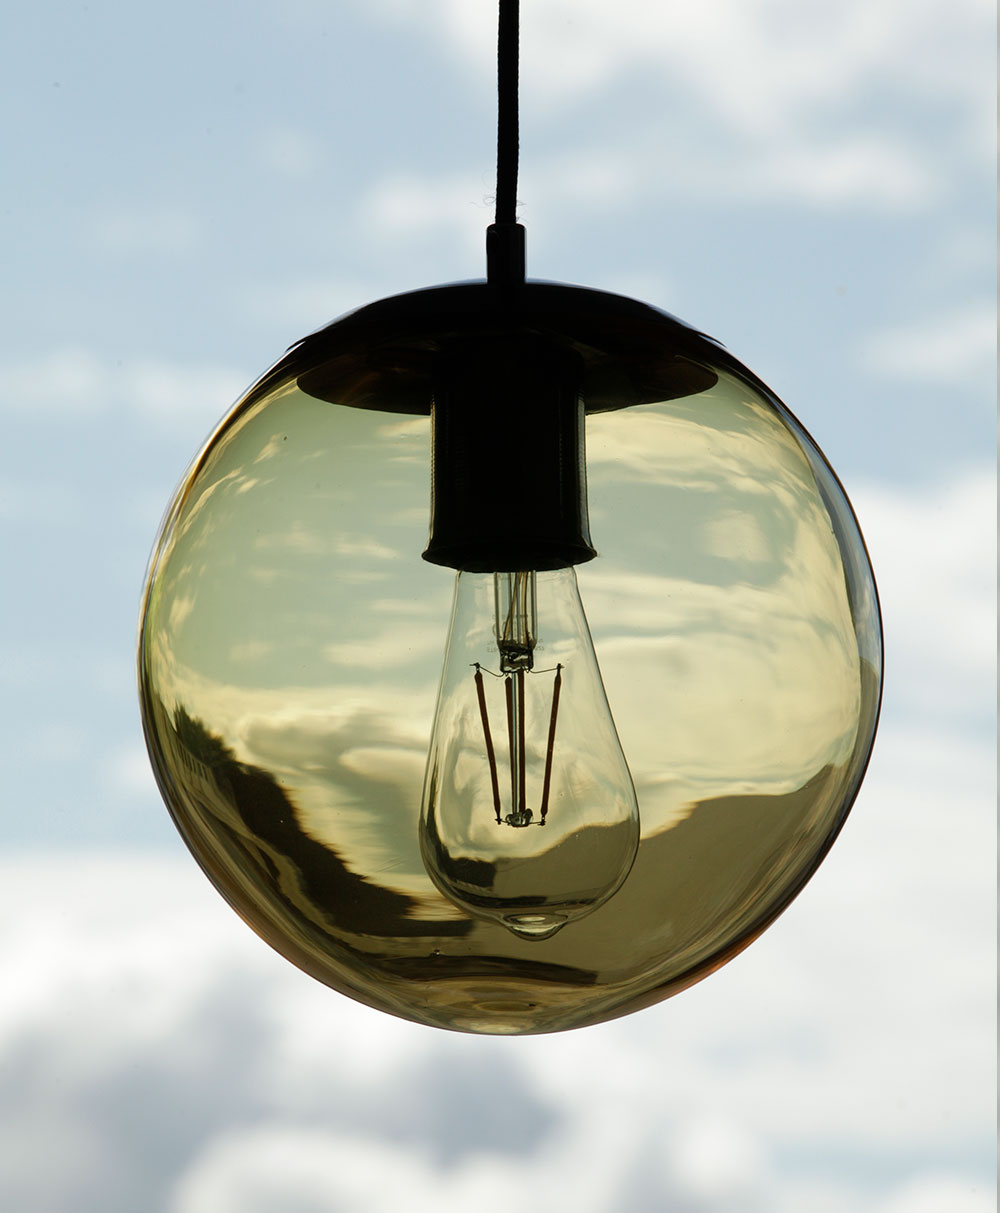 Bunt gefärbte Glaskugel-Leuchte, div. Glas-Farben, Ø 22 cm: Bernstein-braun gefärbte Glaskugel (transparent)